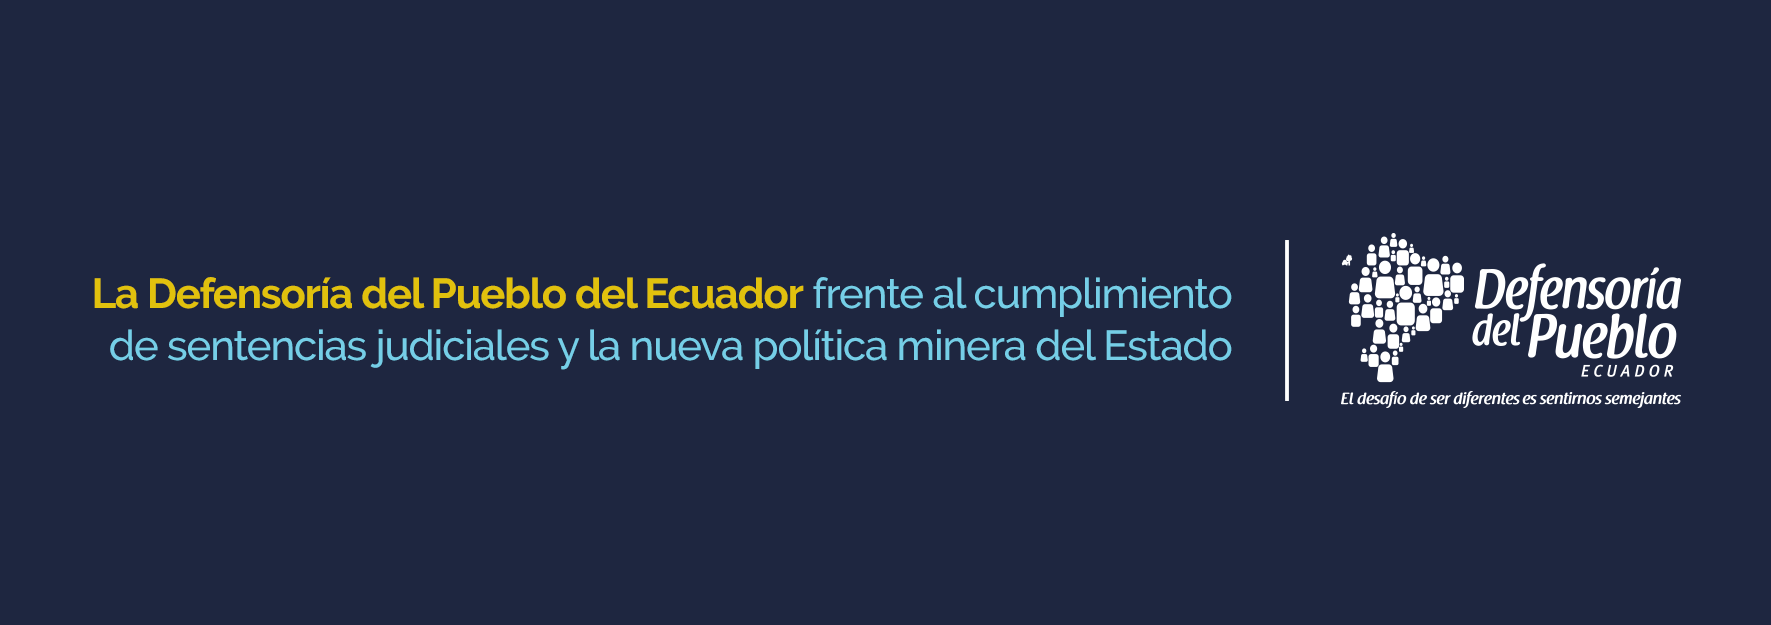 La Defensoría del Pueblo del Ecuador frente al cumplimiento de sentencias  judiciales y la nueva política minera del Estado - Defensoría del Pueblo